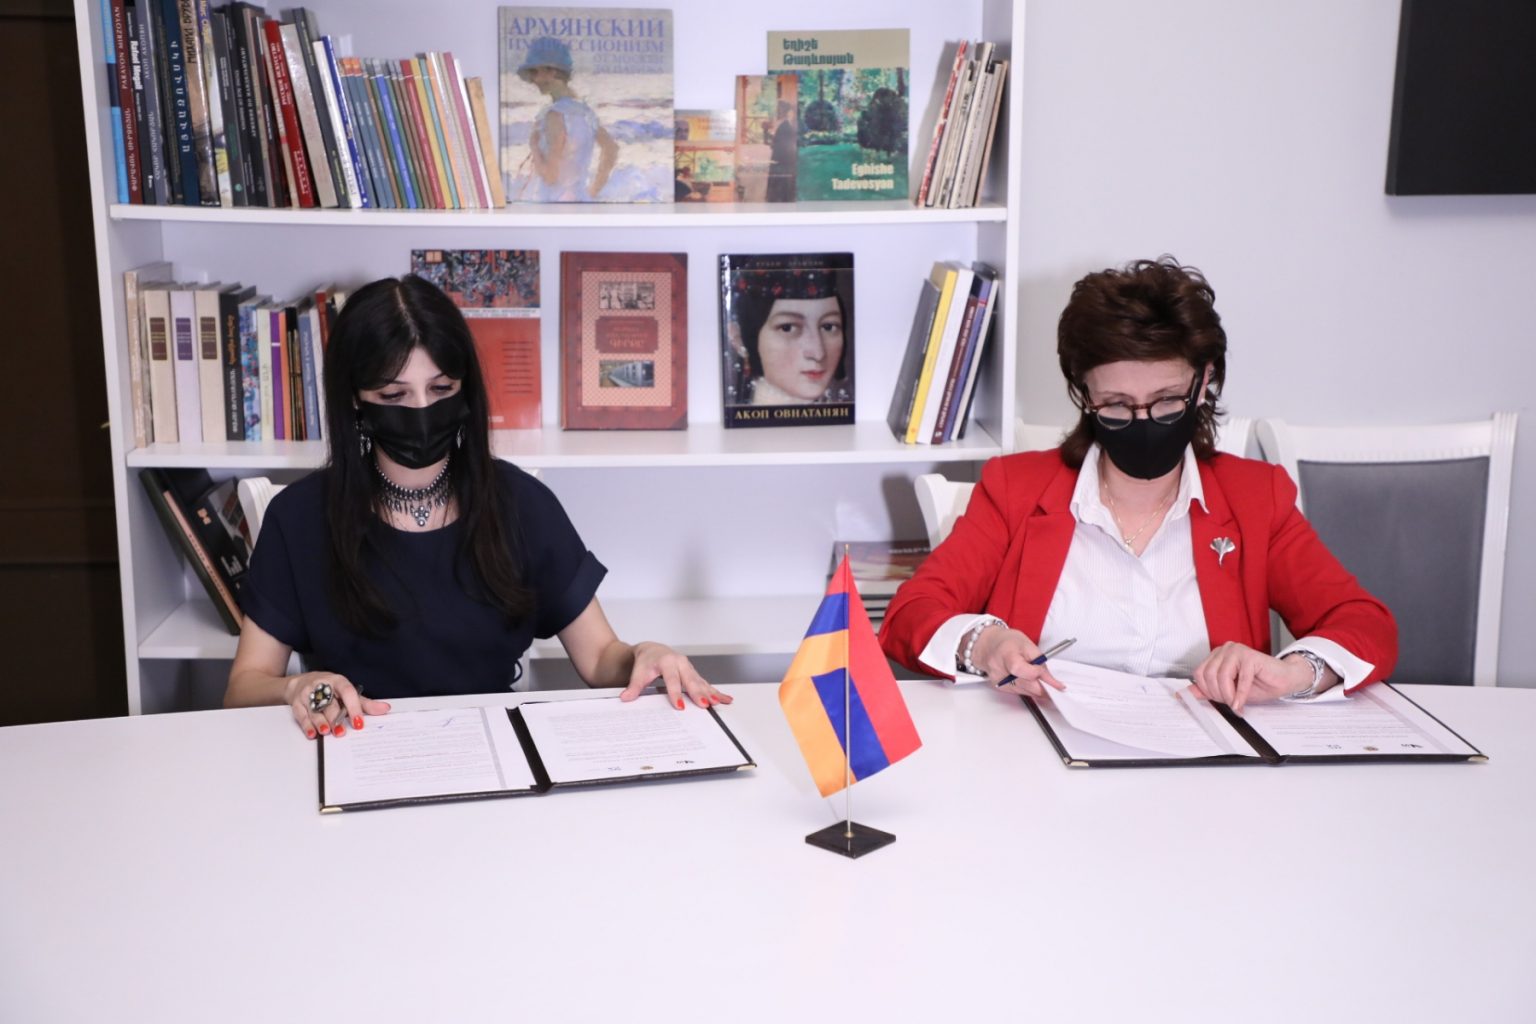 Համագործակցության հուշագիր է ստորագրվել. հայկական կինոարվեստի և կերպարվեստի բացառիկ նմուշները կներկայացվեն նորովի